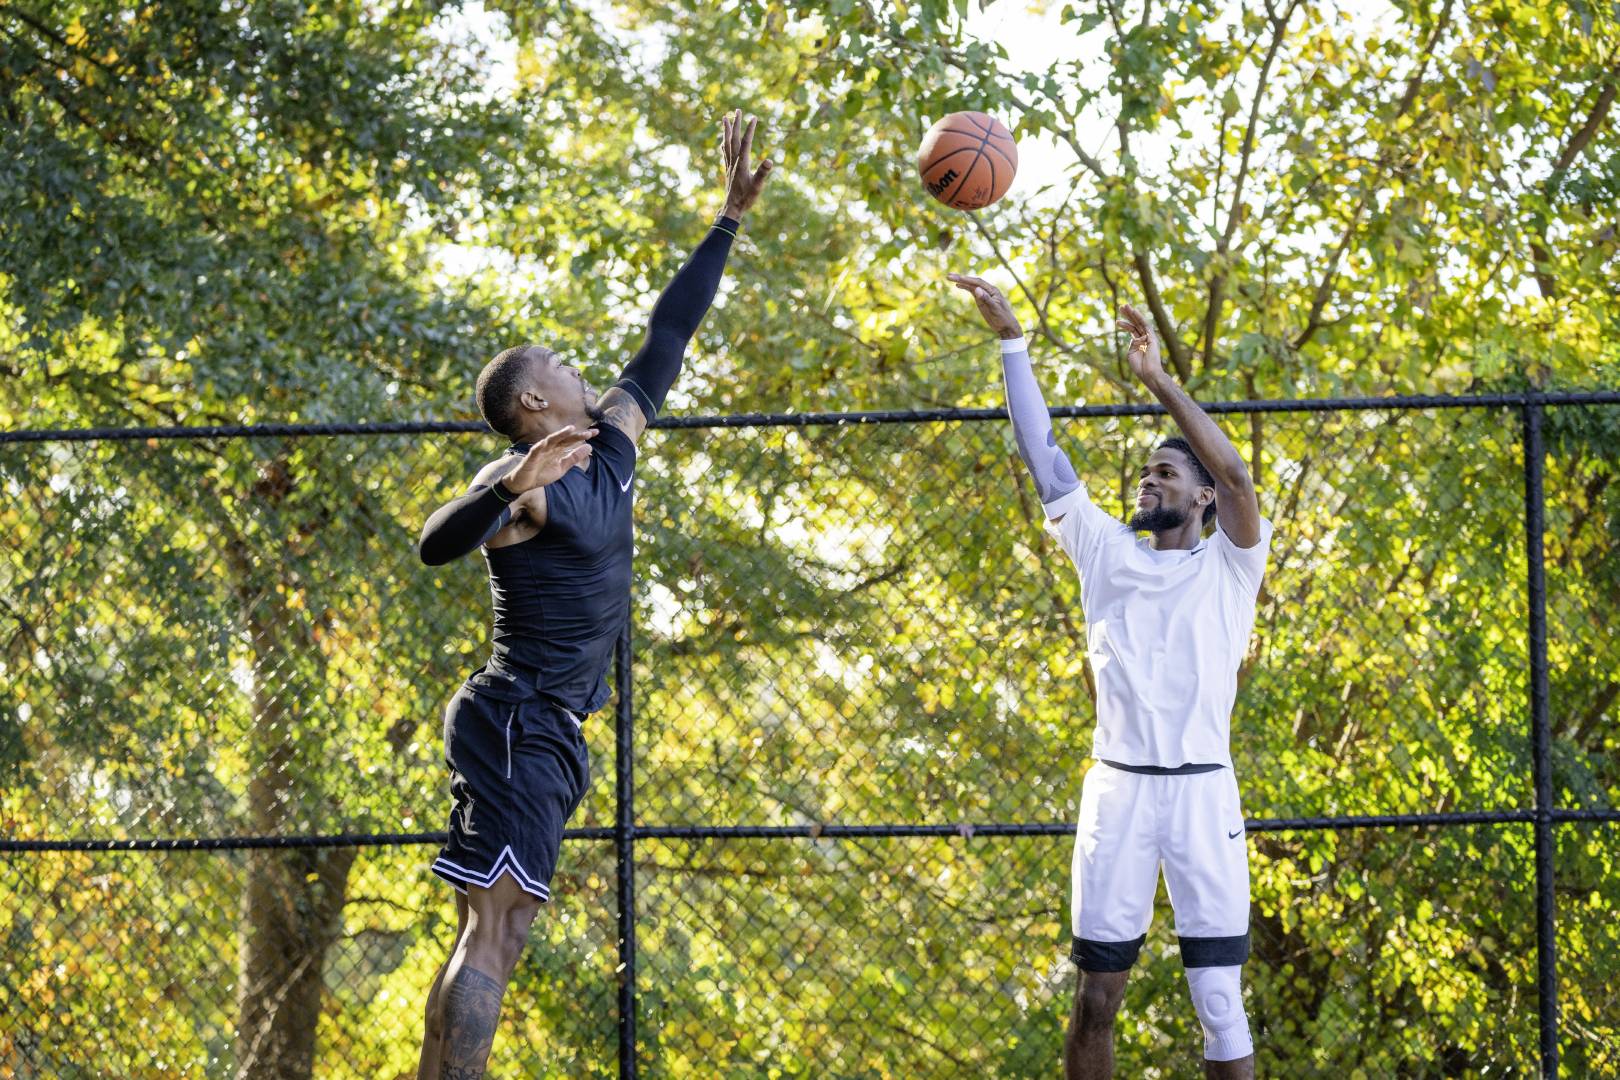 Basketbalspelers in Black Game Clothing proberen zijn tegenstander te blokkeren in witte kleding hoog boven de grond